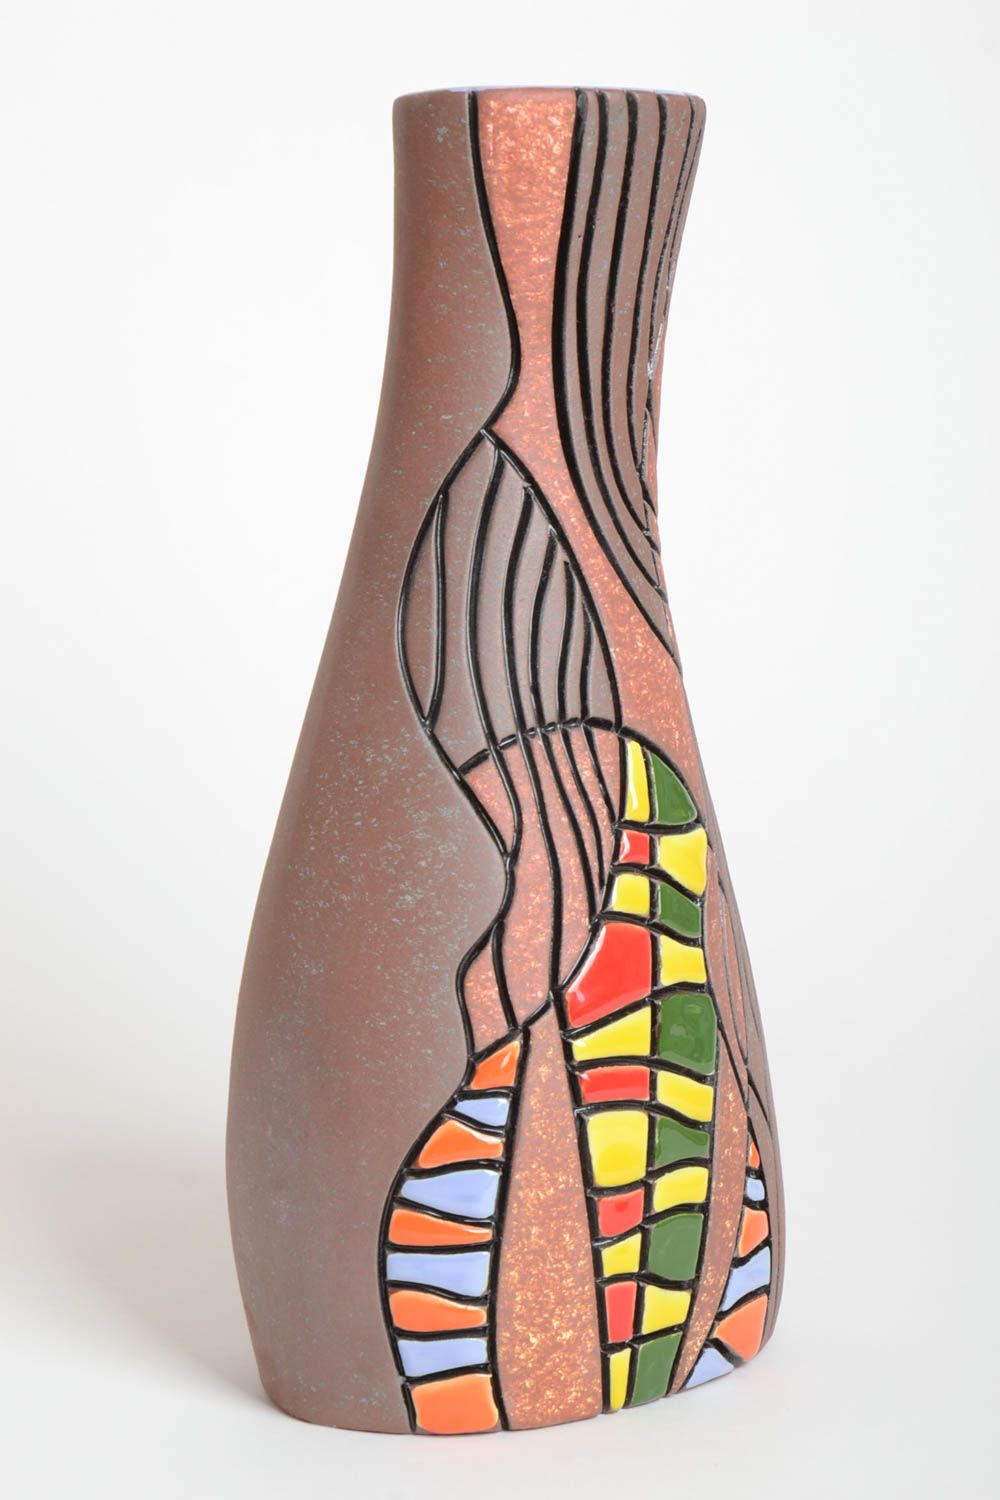 Сувенир ручной работы ваза для цветов эксклюзивный предмет интерьера фантастика фото 2